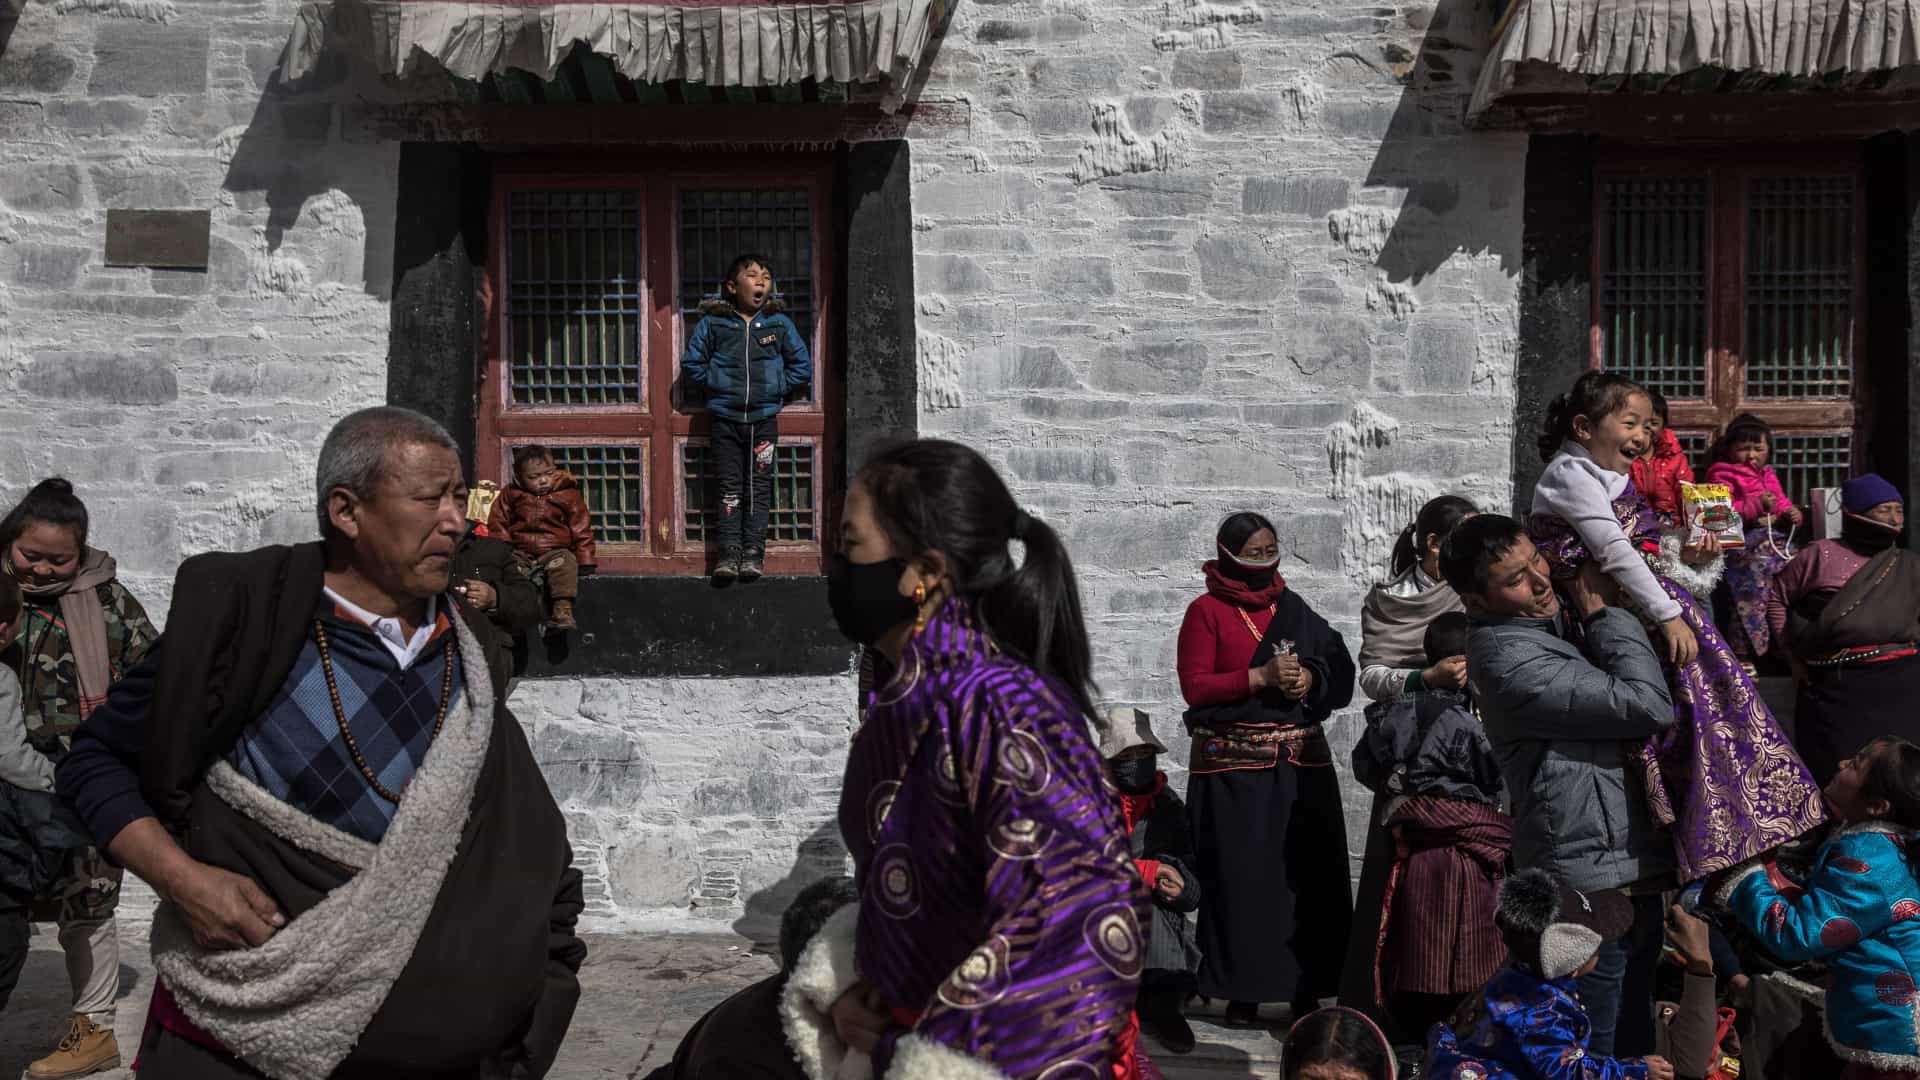 Uma data especial ao povo tibetano - 28 de março; Por Elias Jabbour